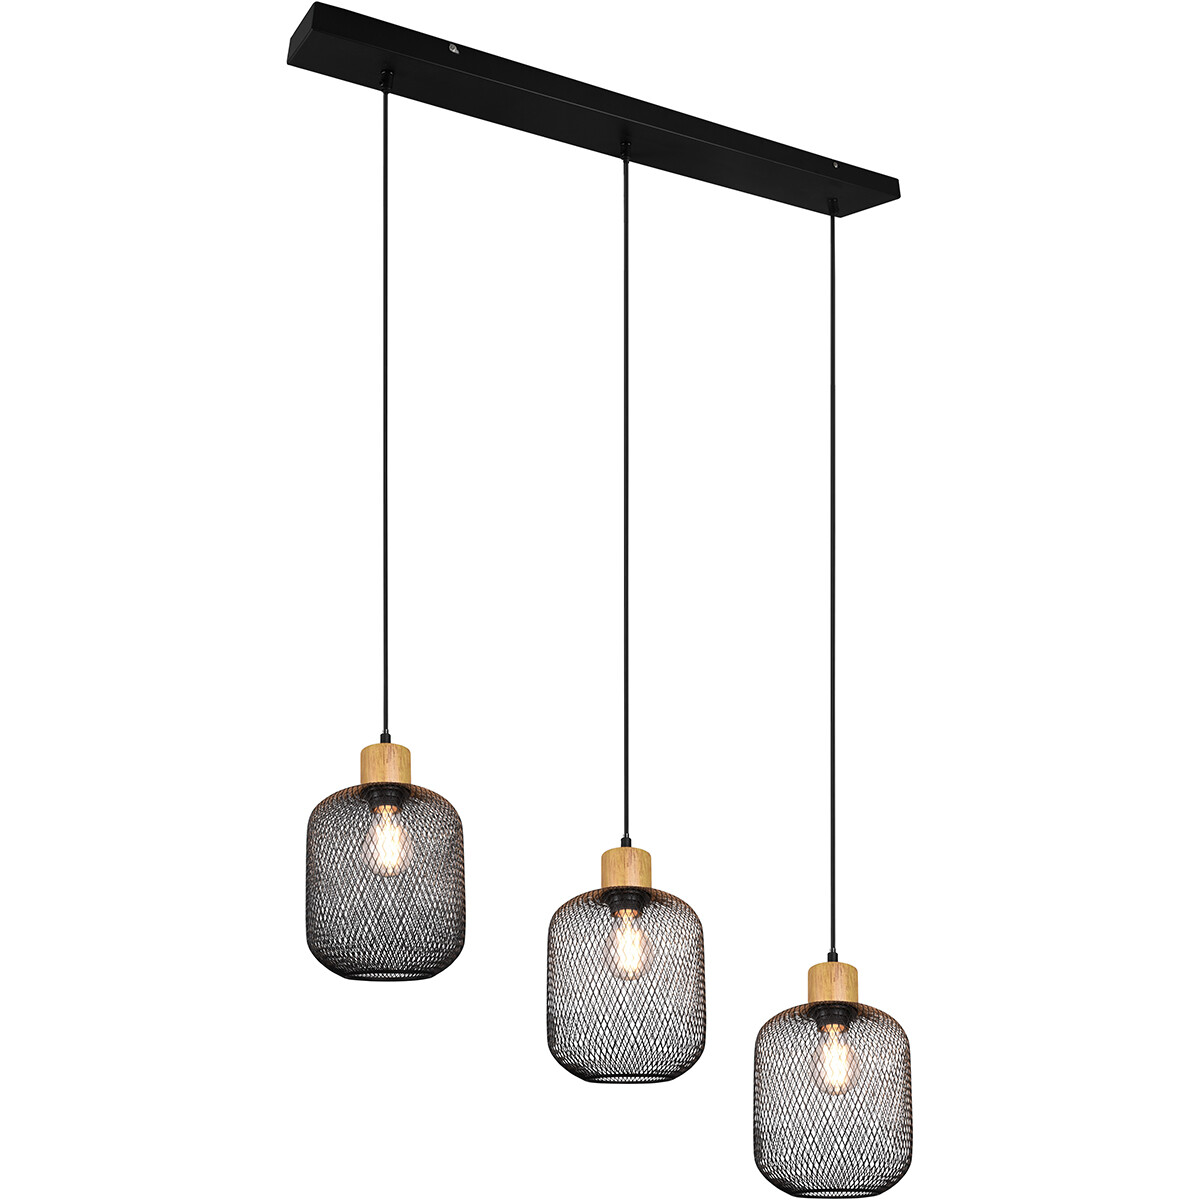 LED Hanglamp - Trion Kalim - E27 Fitting - 3-lichts - Rechthoek - Mat Zwart - Aluminium product afbeelding